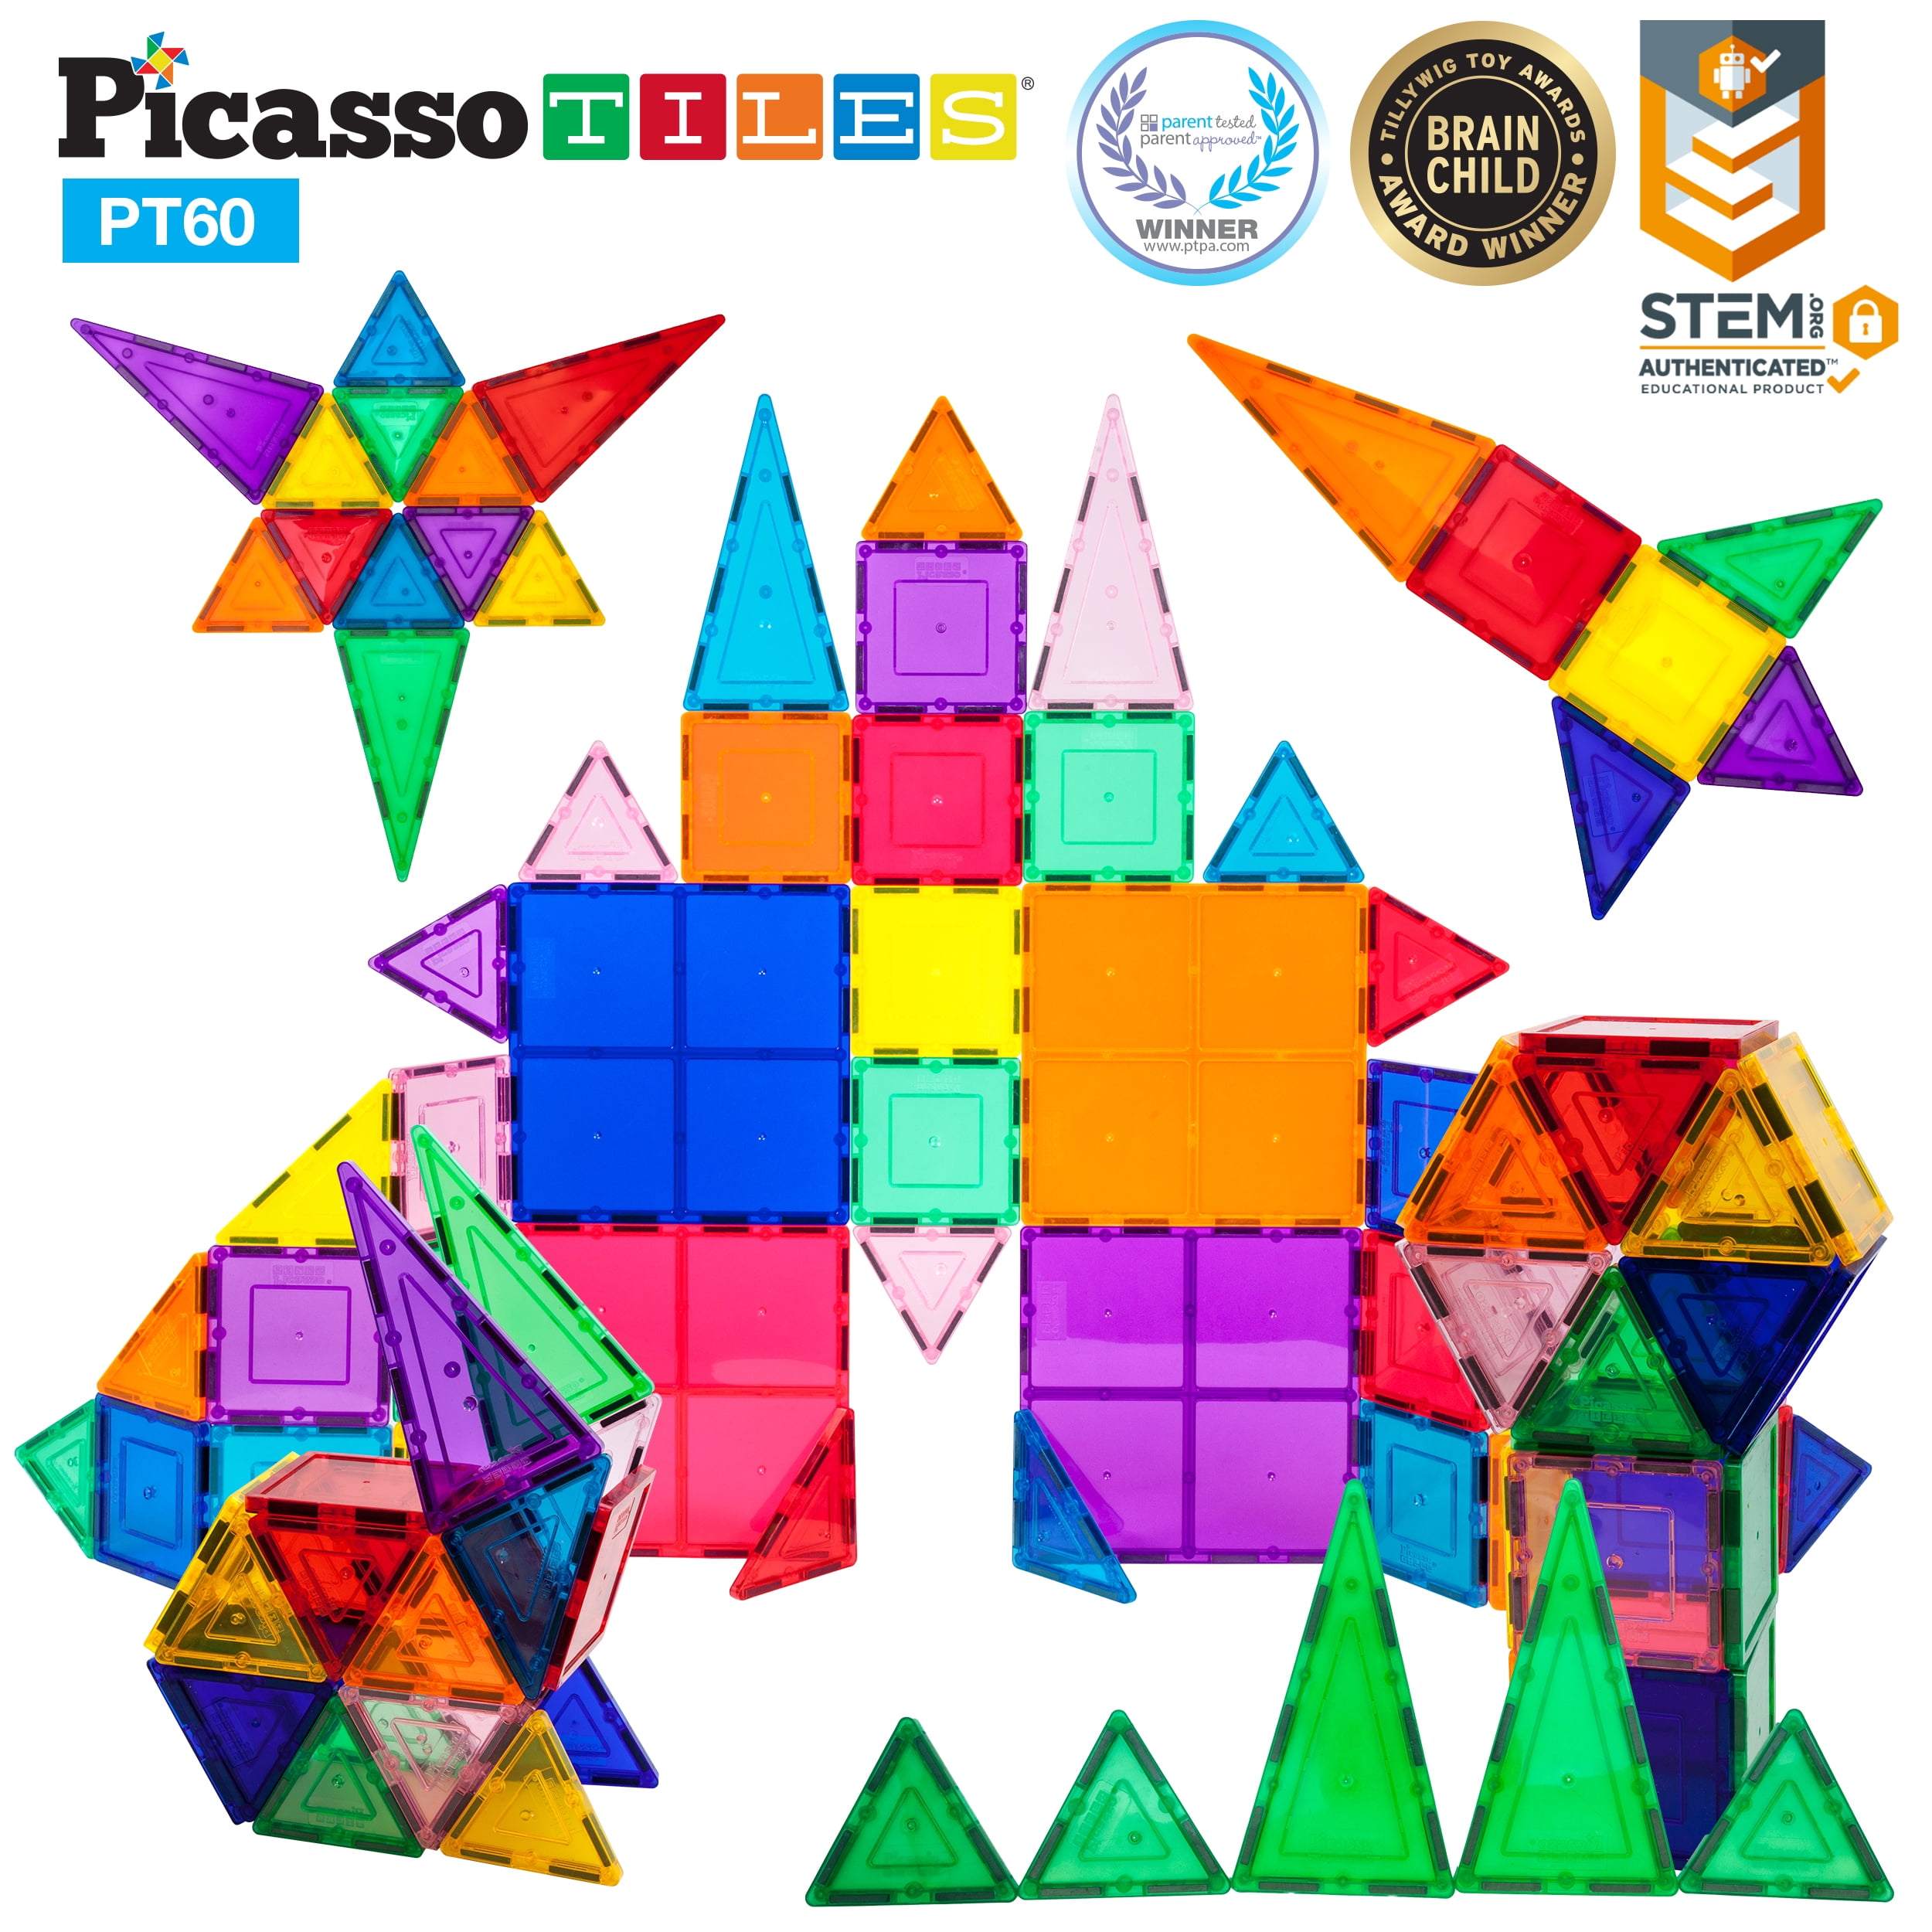 PicassoTiles PT60 Magnet Building Set for sale online 60-Piece 